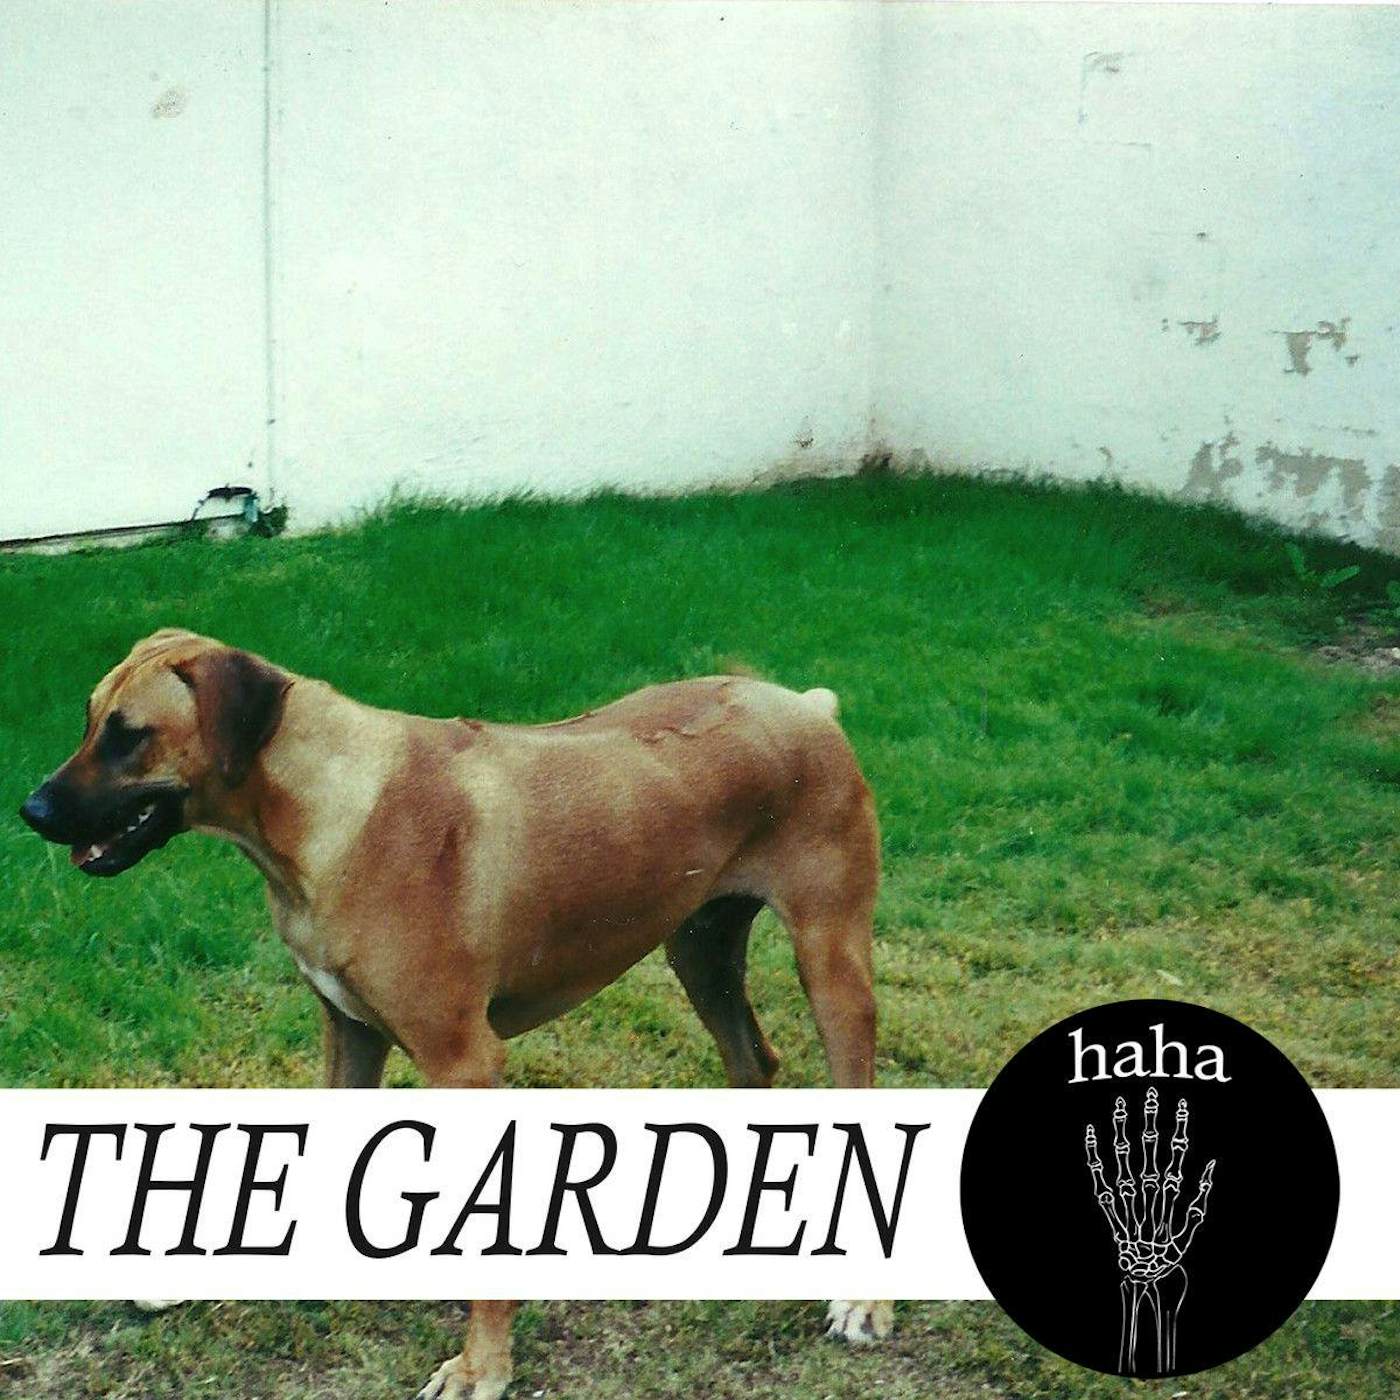 The Garden Haha Vinyl Record